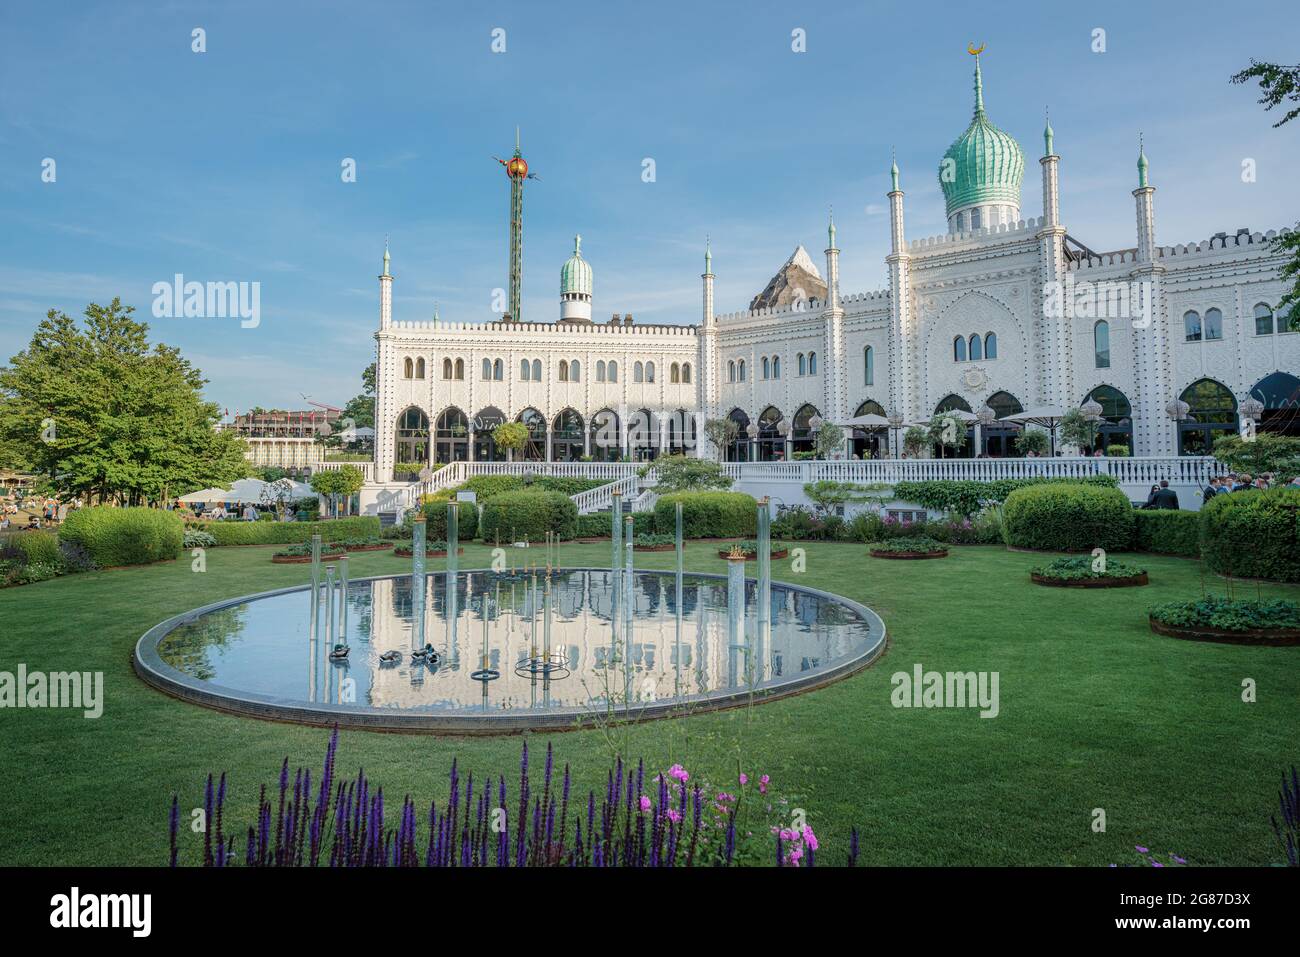 Maurischer Palast und das Nimb im Vergnügungspark Tivoli Gardens - Kopenhagen, Dänemark Stockfoto